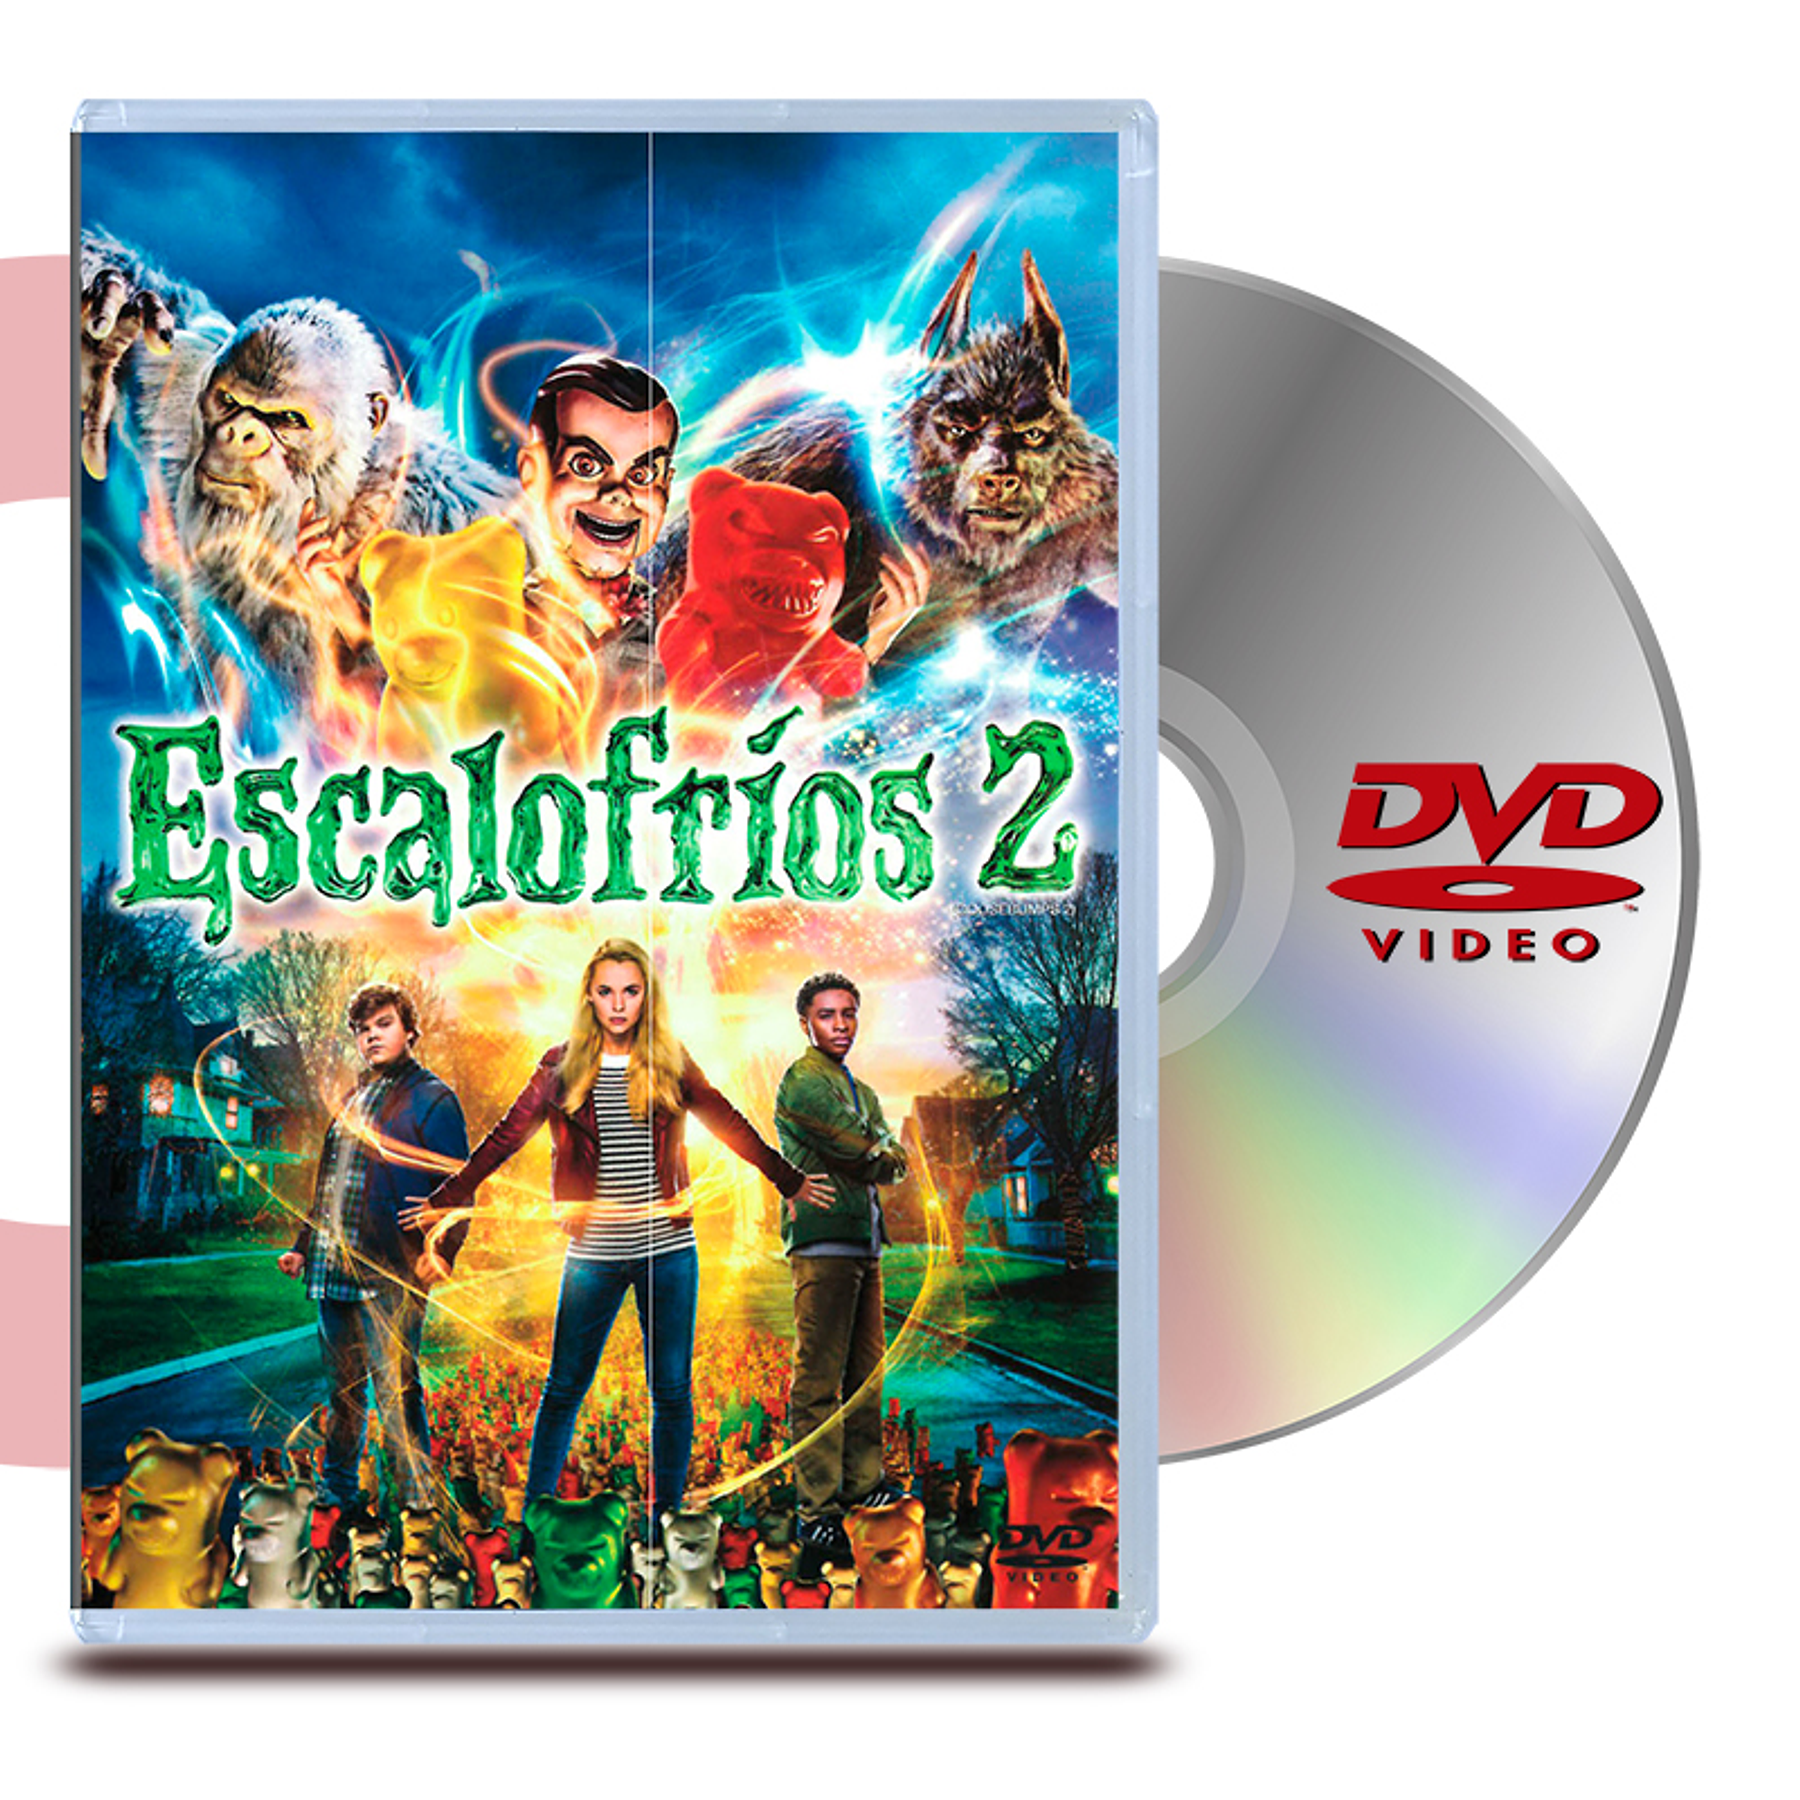 DVD ESCALOFRIOS 2 UNA NOCHE EMBRUJADA